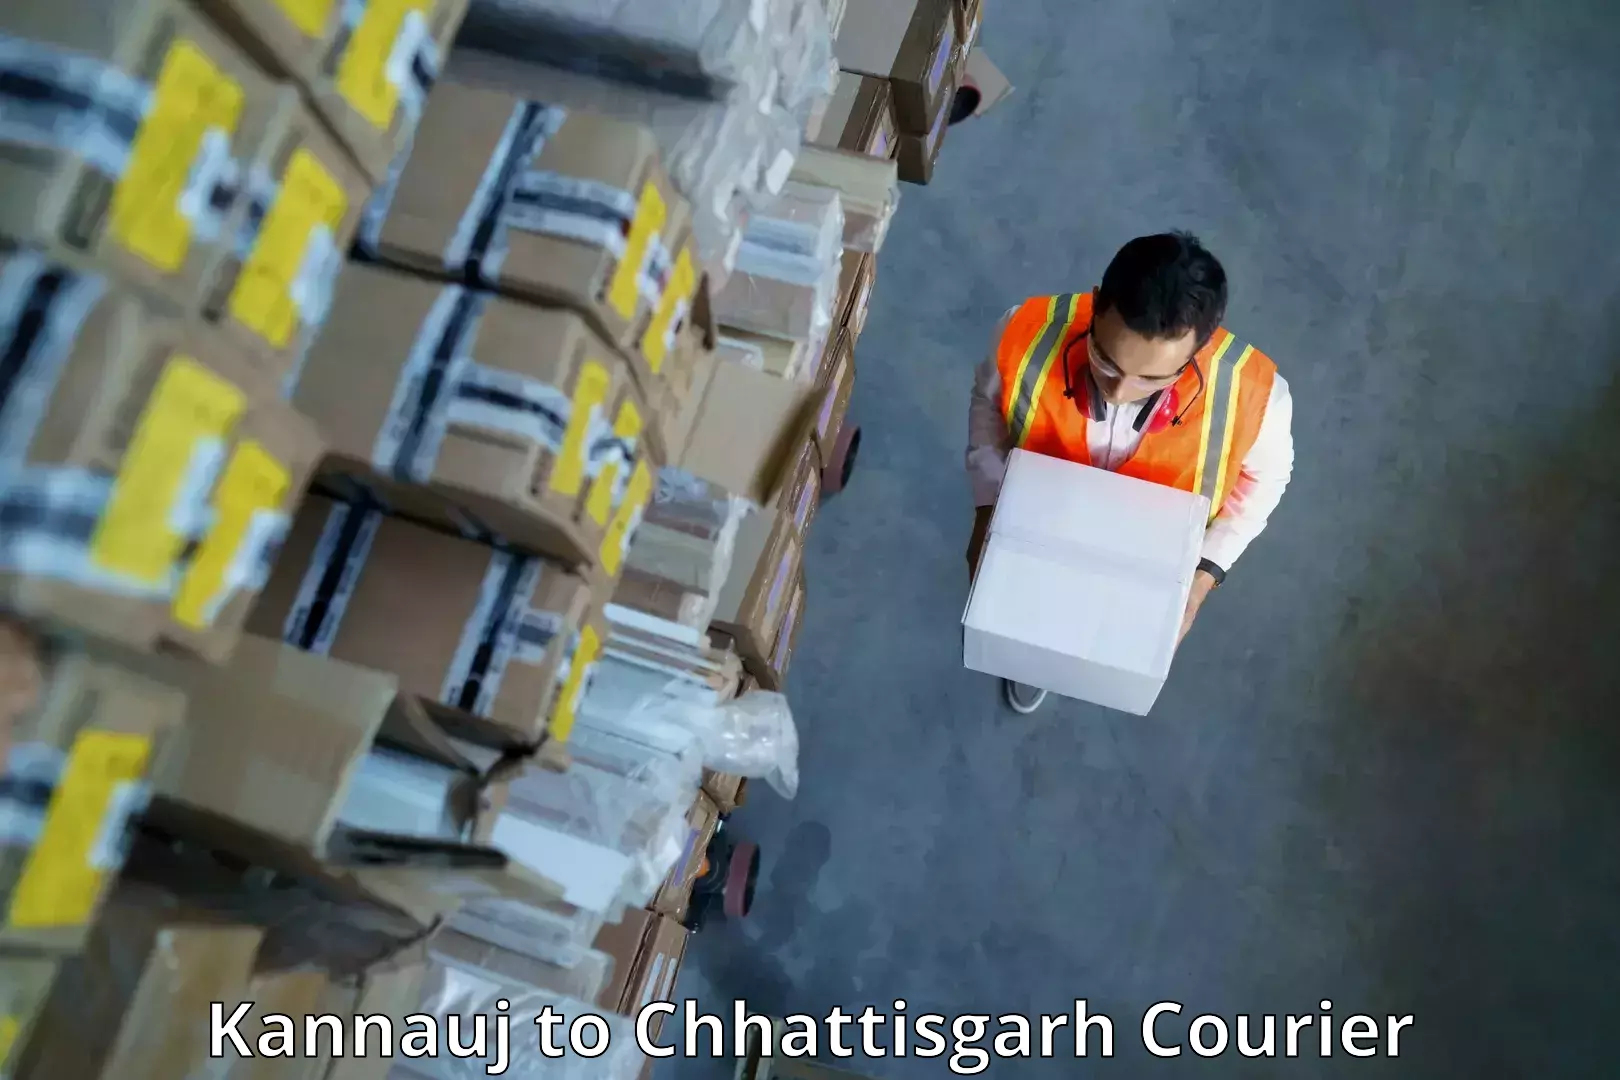 Reliable shipping partners Kannauj to Bilaspur